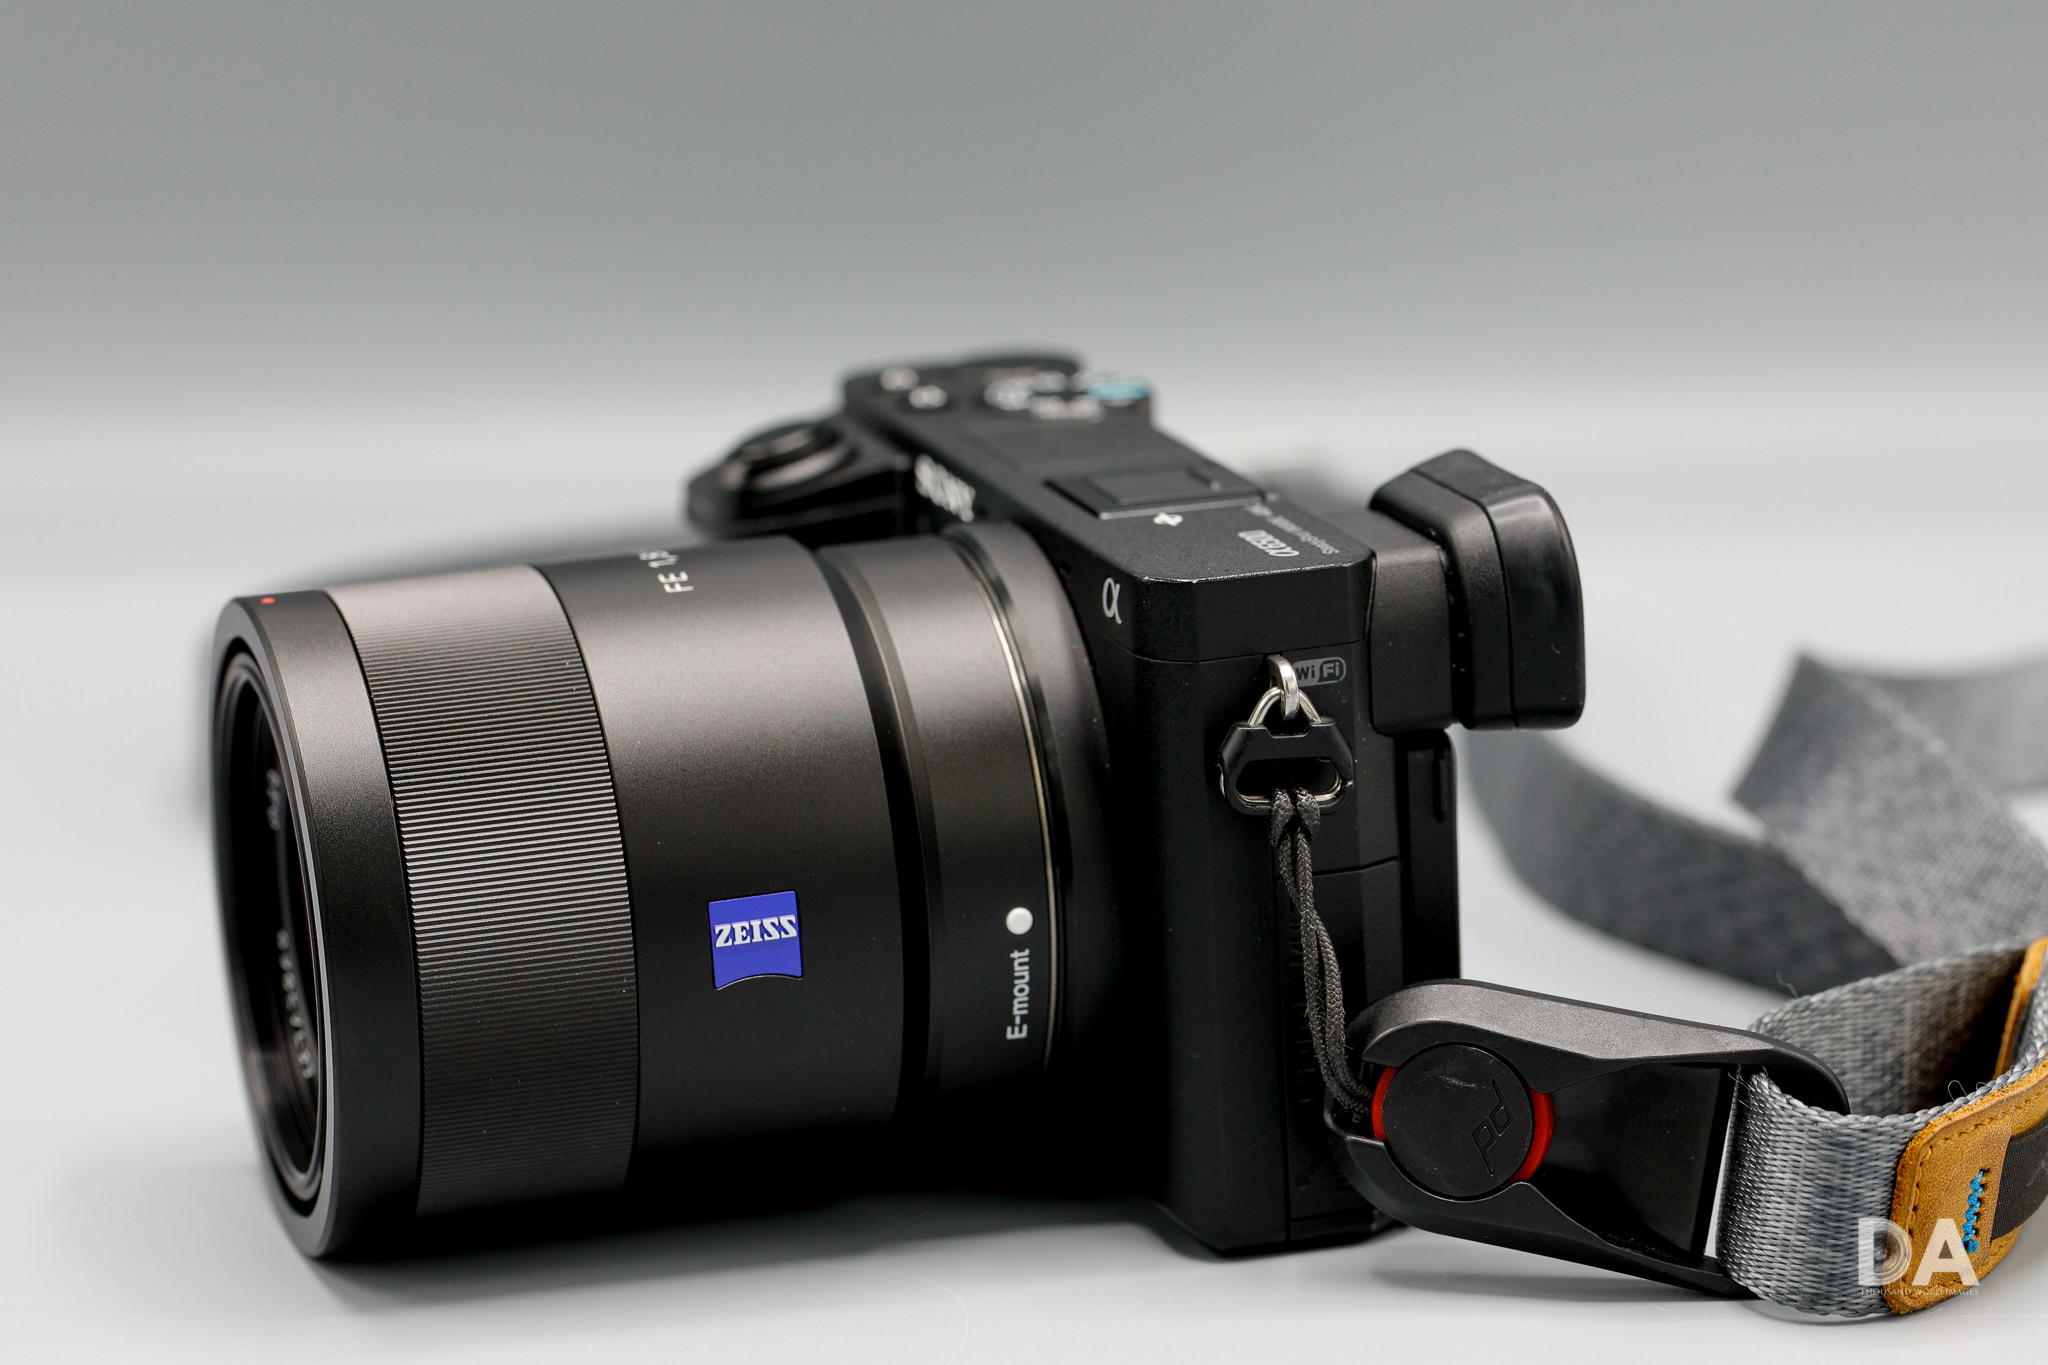 値段が激安 - SONY Sony Sonnar F1.8 ソニ Fe55mm レンズ(単焦点) - www.pvn.gob.pe